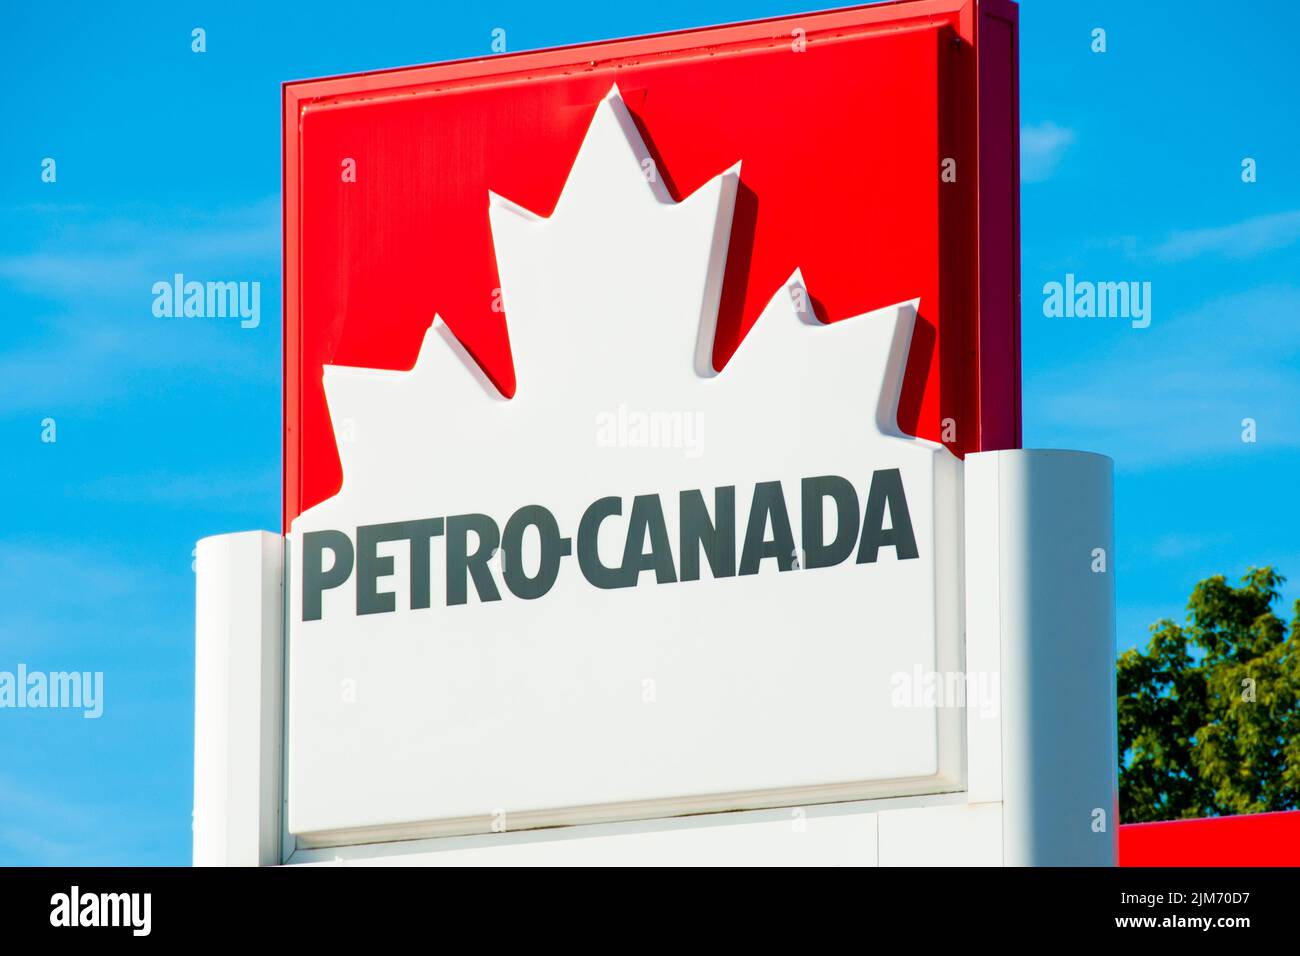 Halifax, Canada - 13 août 2016 : Petro-Canada est une chaîne de stations-service partout au Canada et une marque de commerce de Suncor énergie Banque D'Images